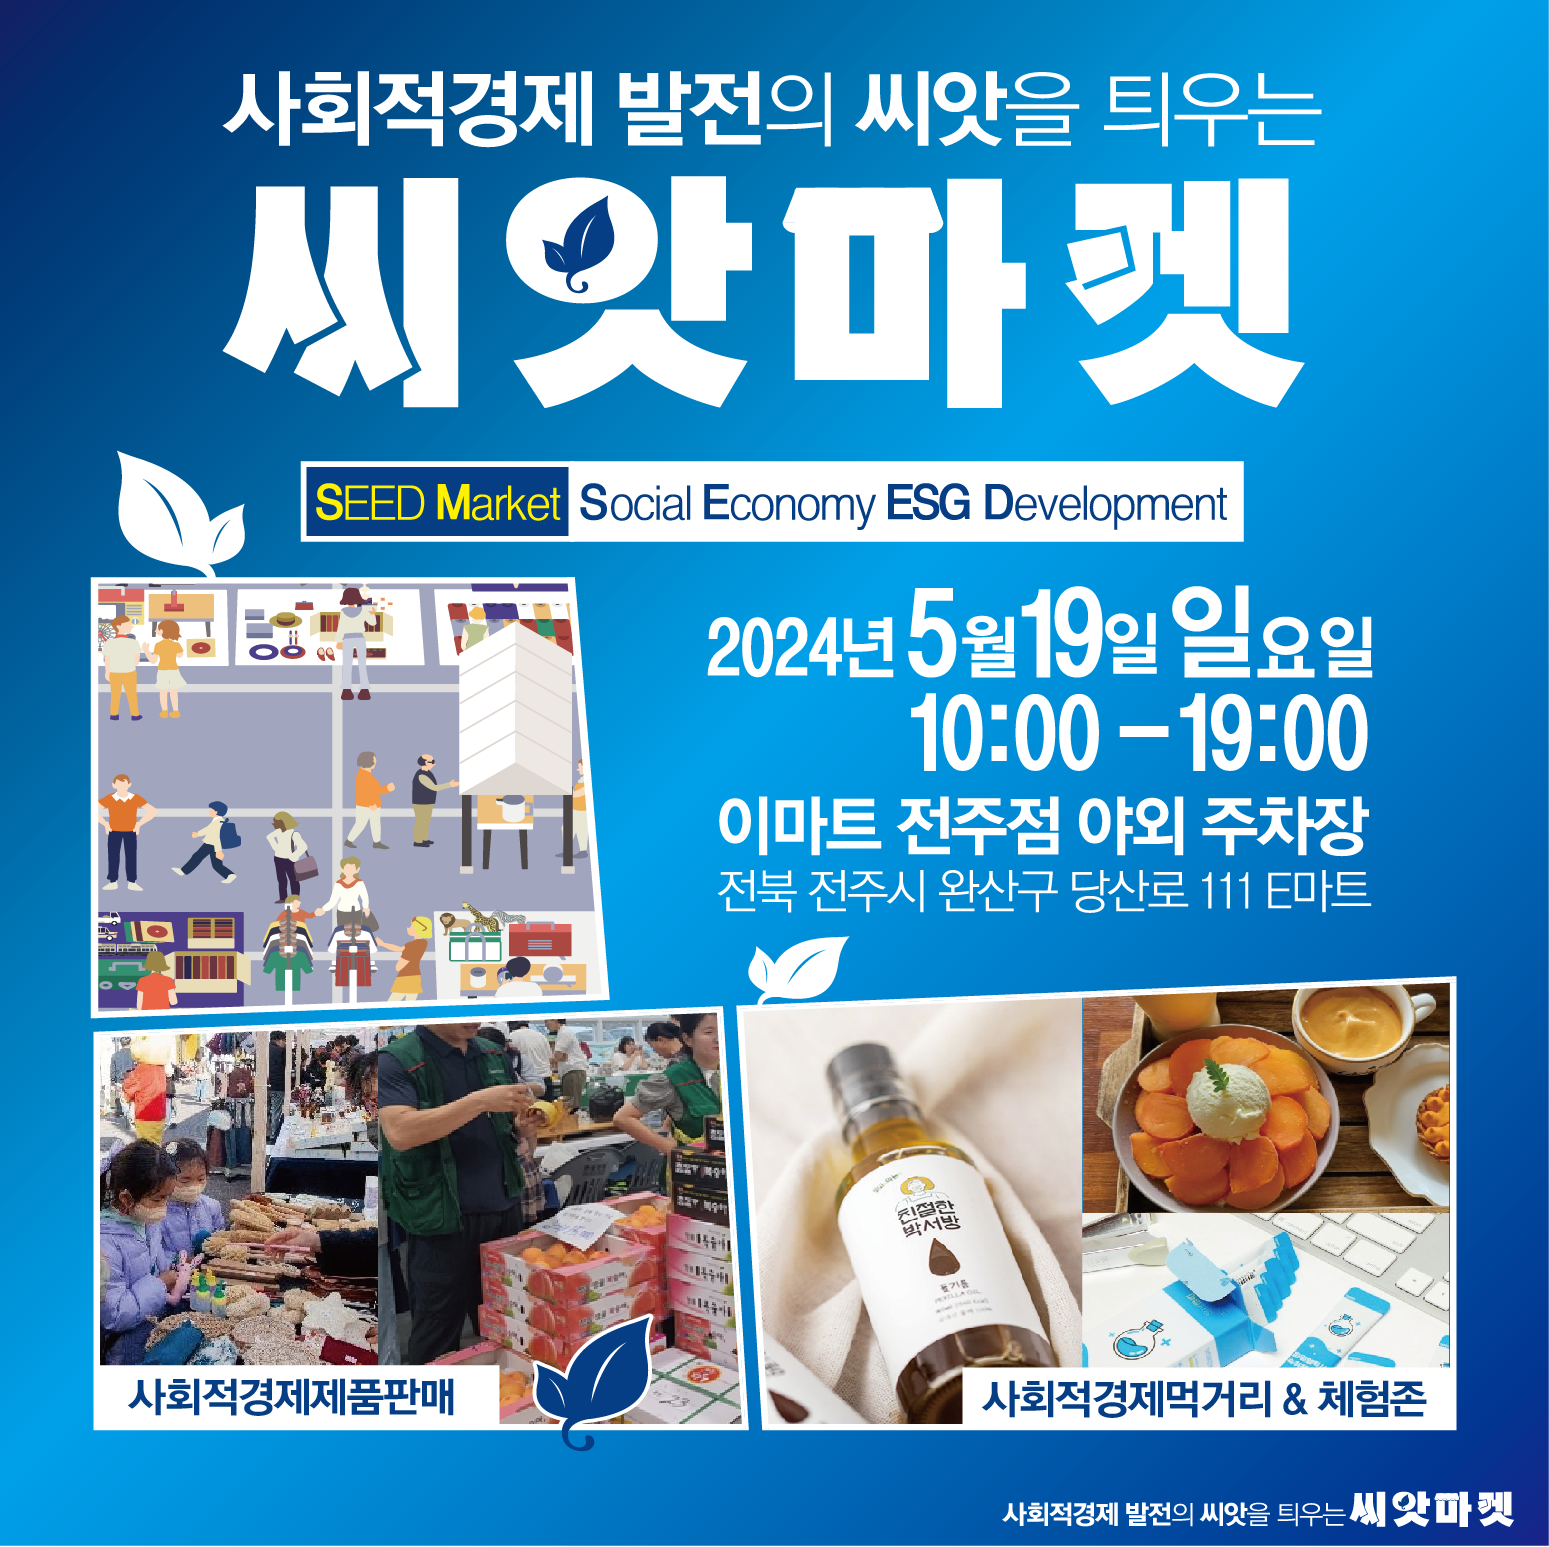 전북특별자치도 사회적경제 성장을 위한 씨앗마켓 알림